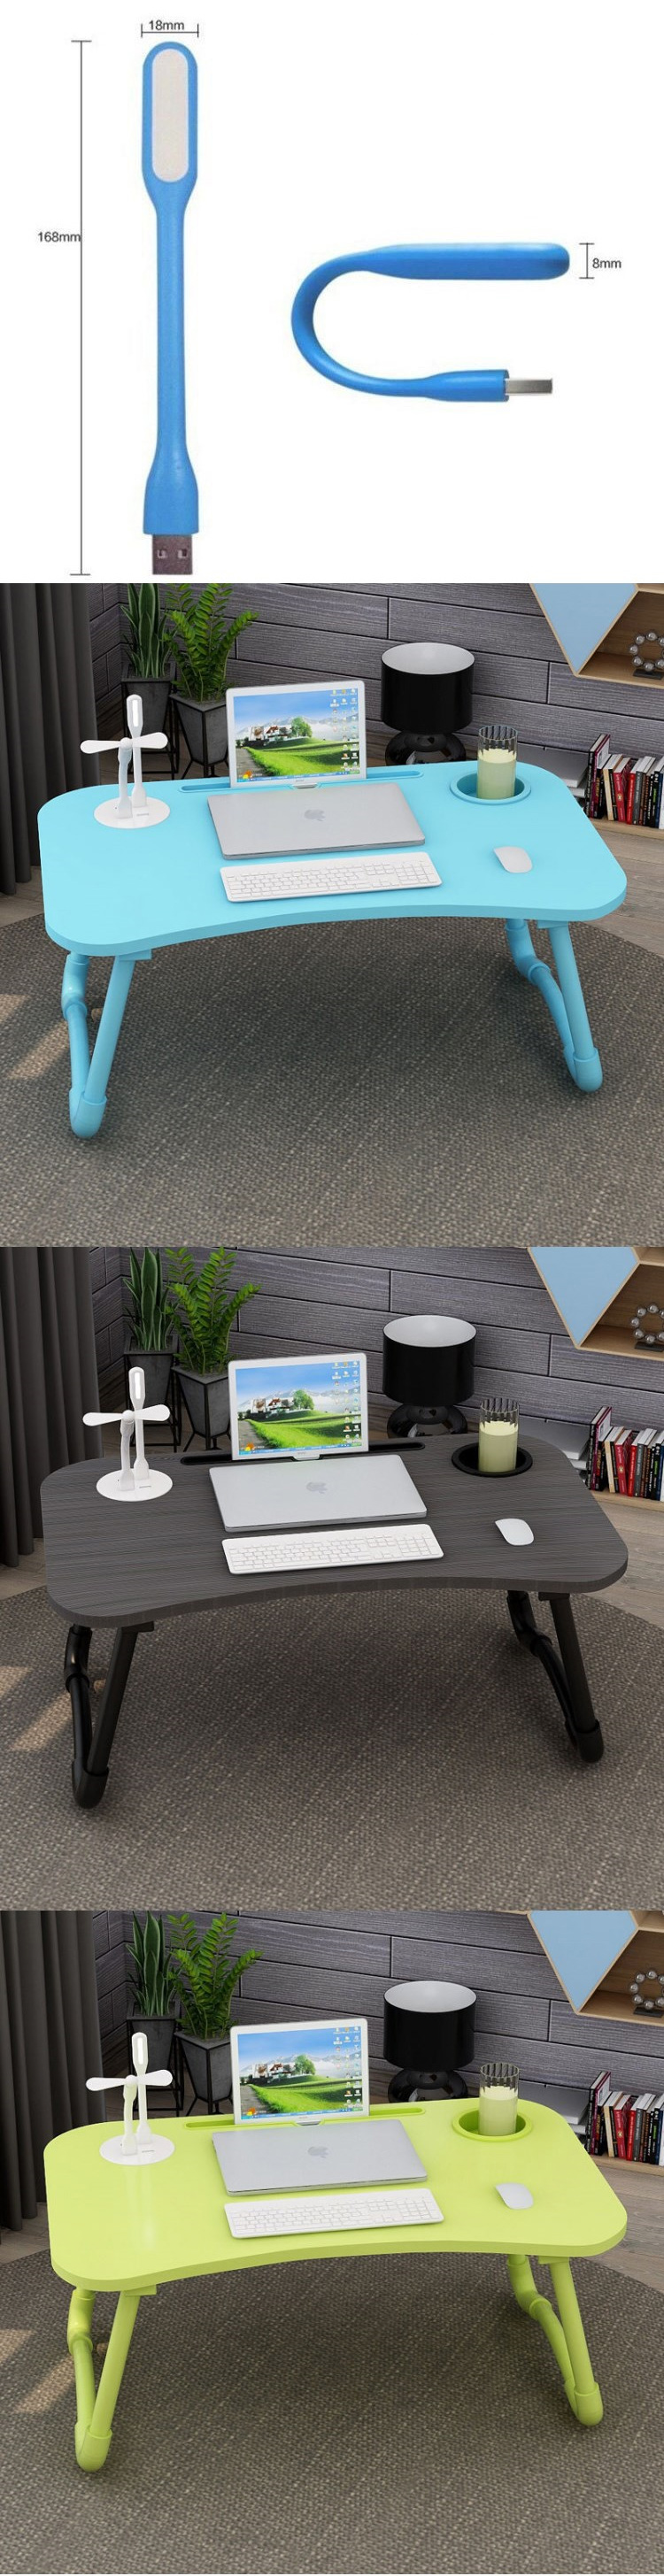 Folding-Laptop-Desk-Notebook-Computer-Desk-Breakfast-Serving-Bed-Trays-Adjustable-Foldable-Flip-Top--1652189-2